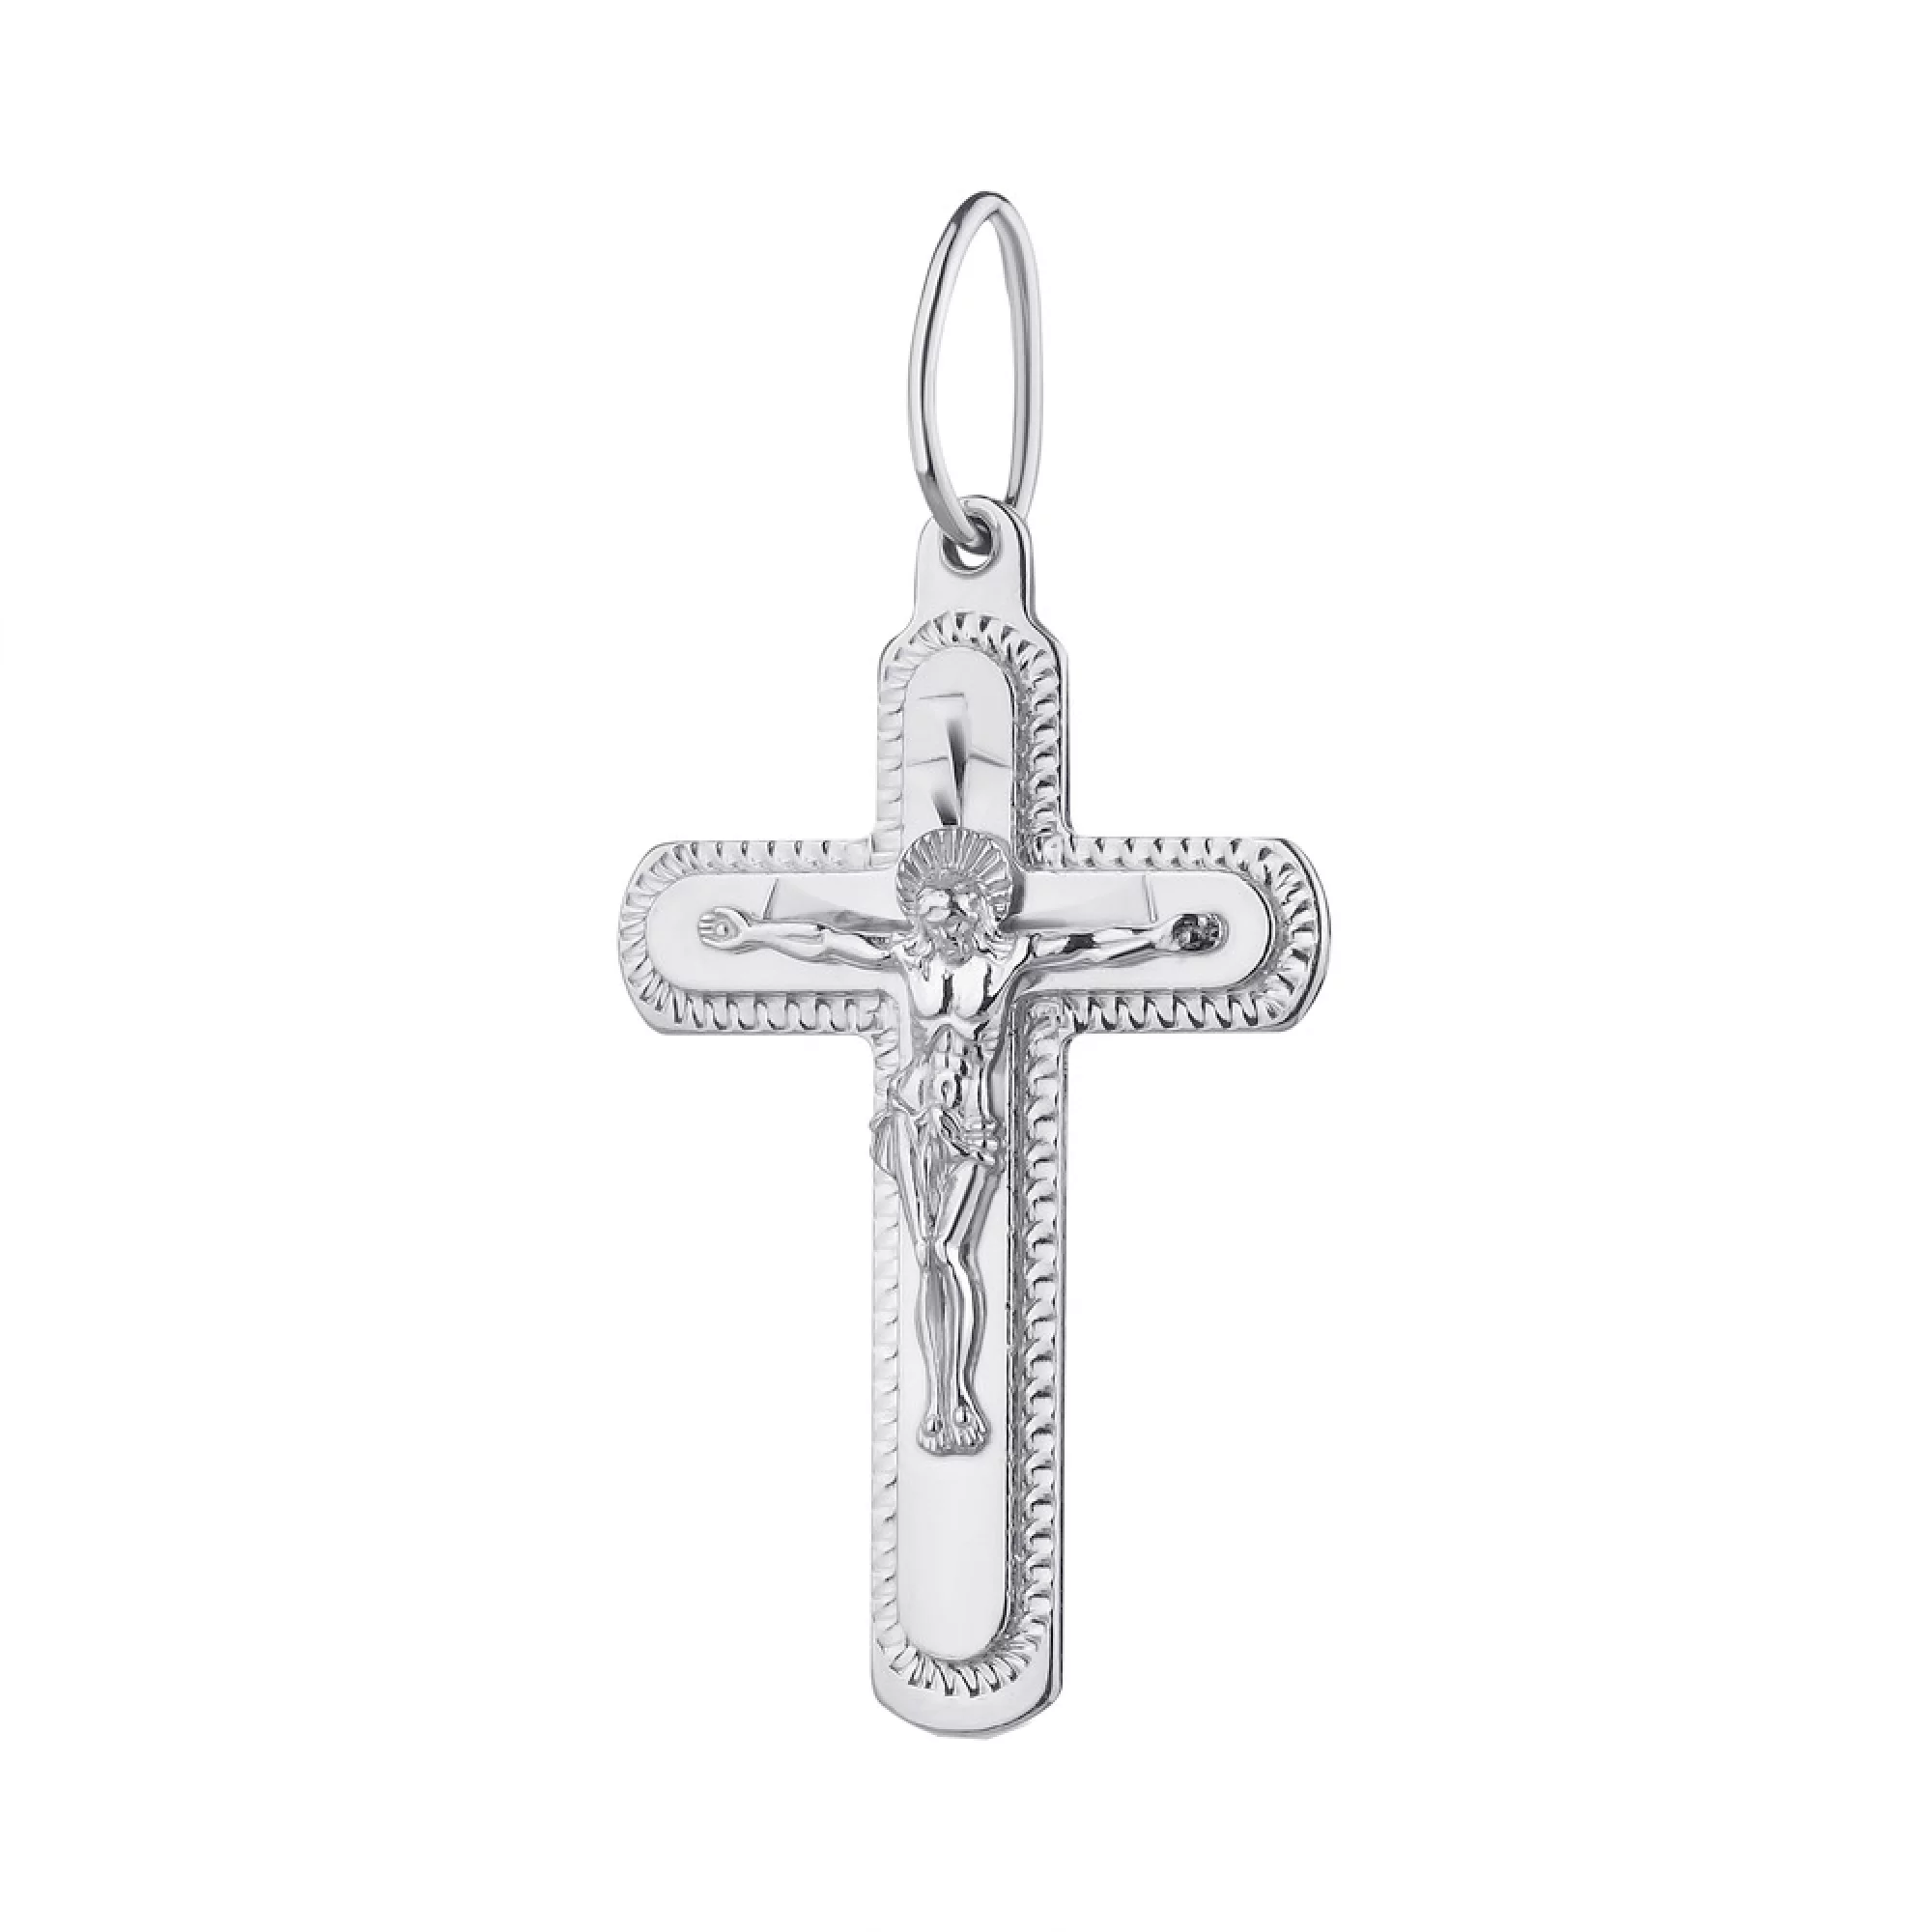 Православный крест из серебра - 1581687 – изображение 1